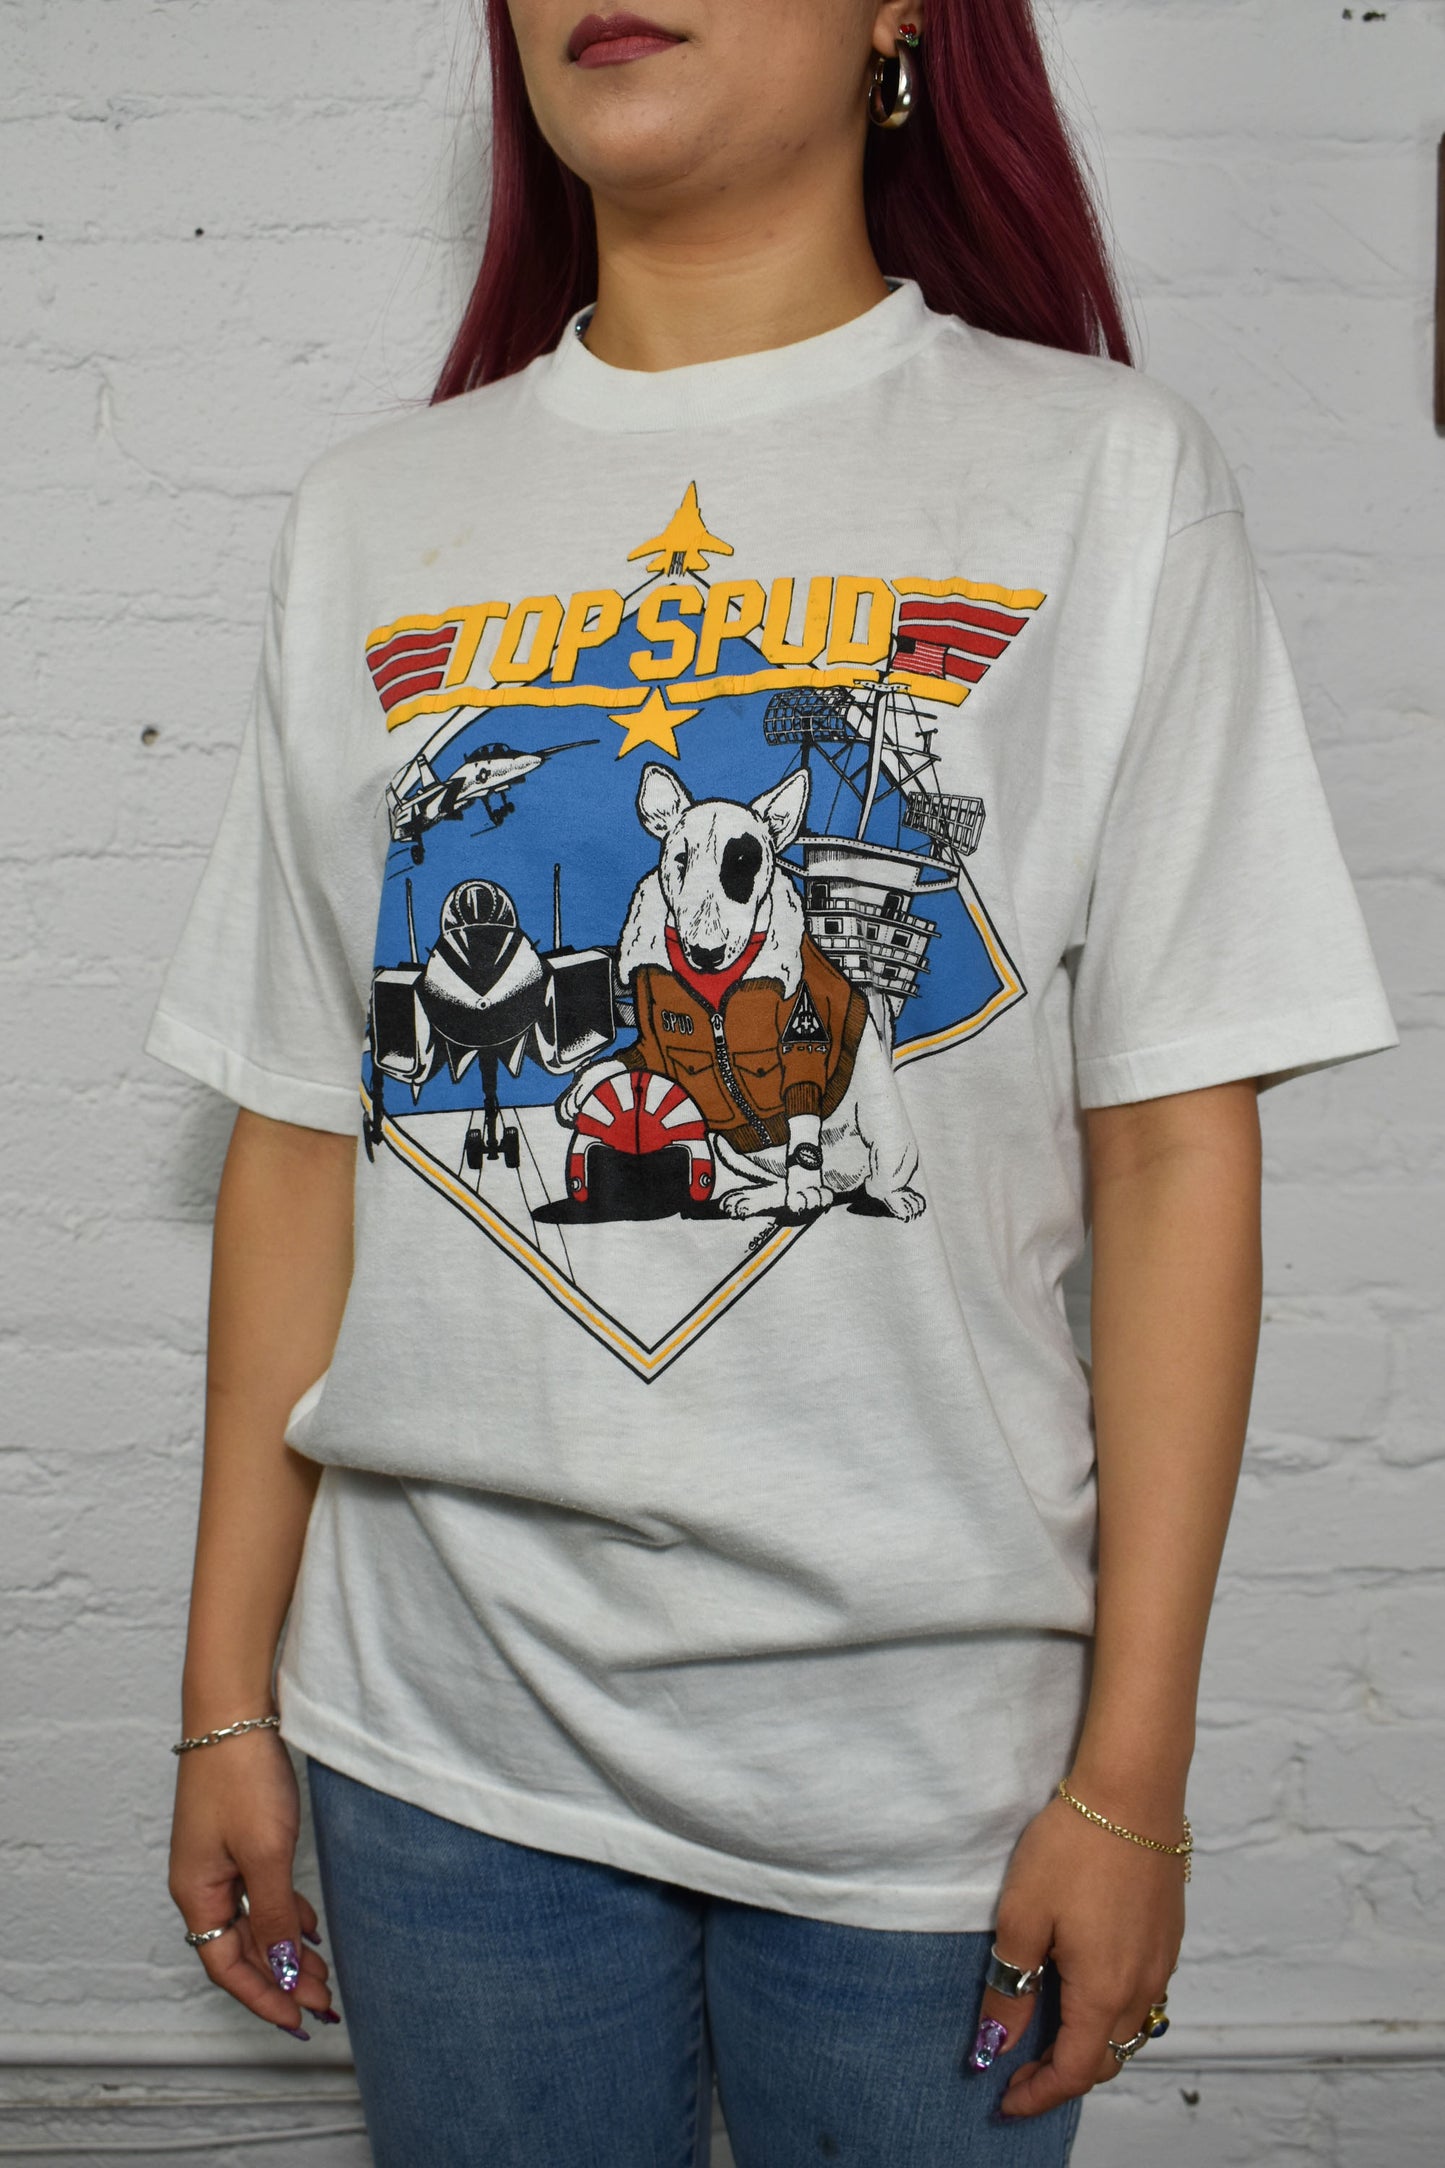 Vintage 1980's "Spud Mackenzie" Top Spud T-Shirt